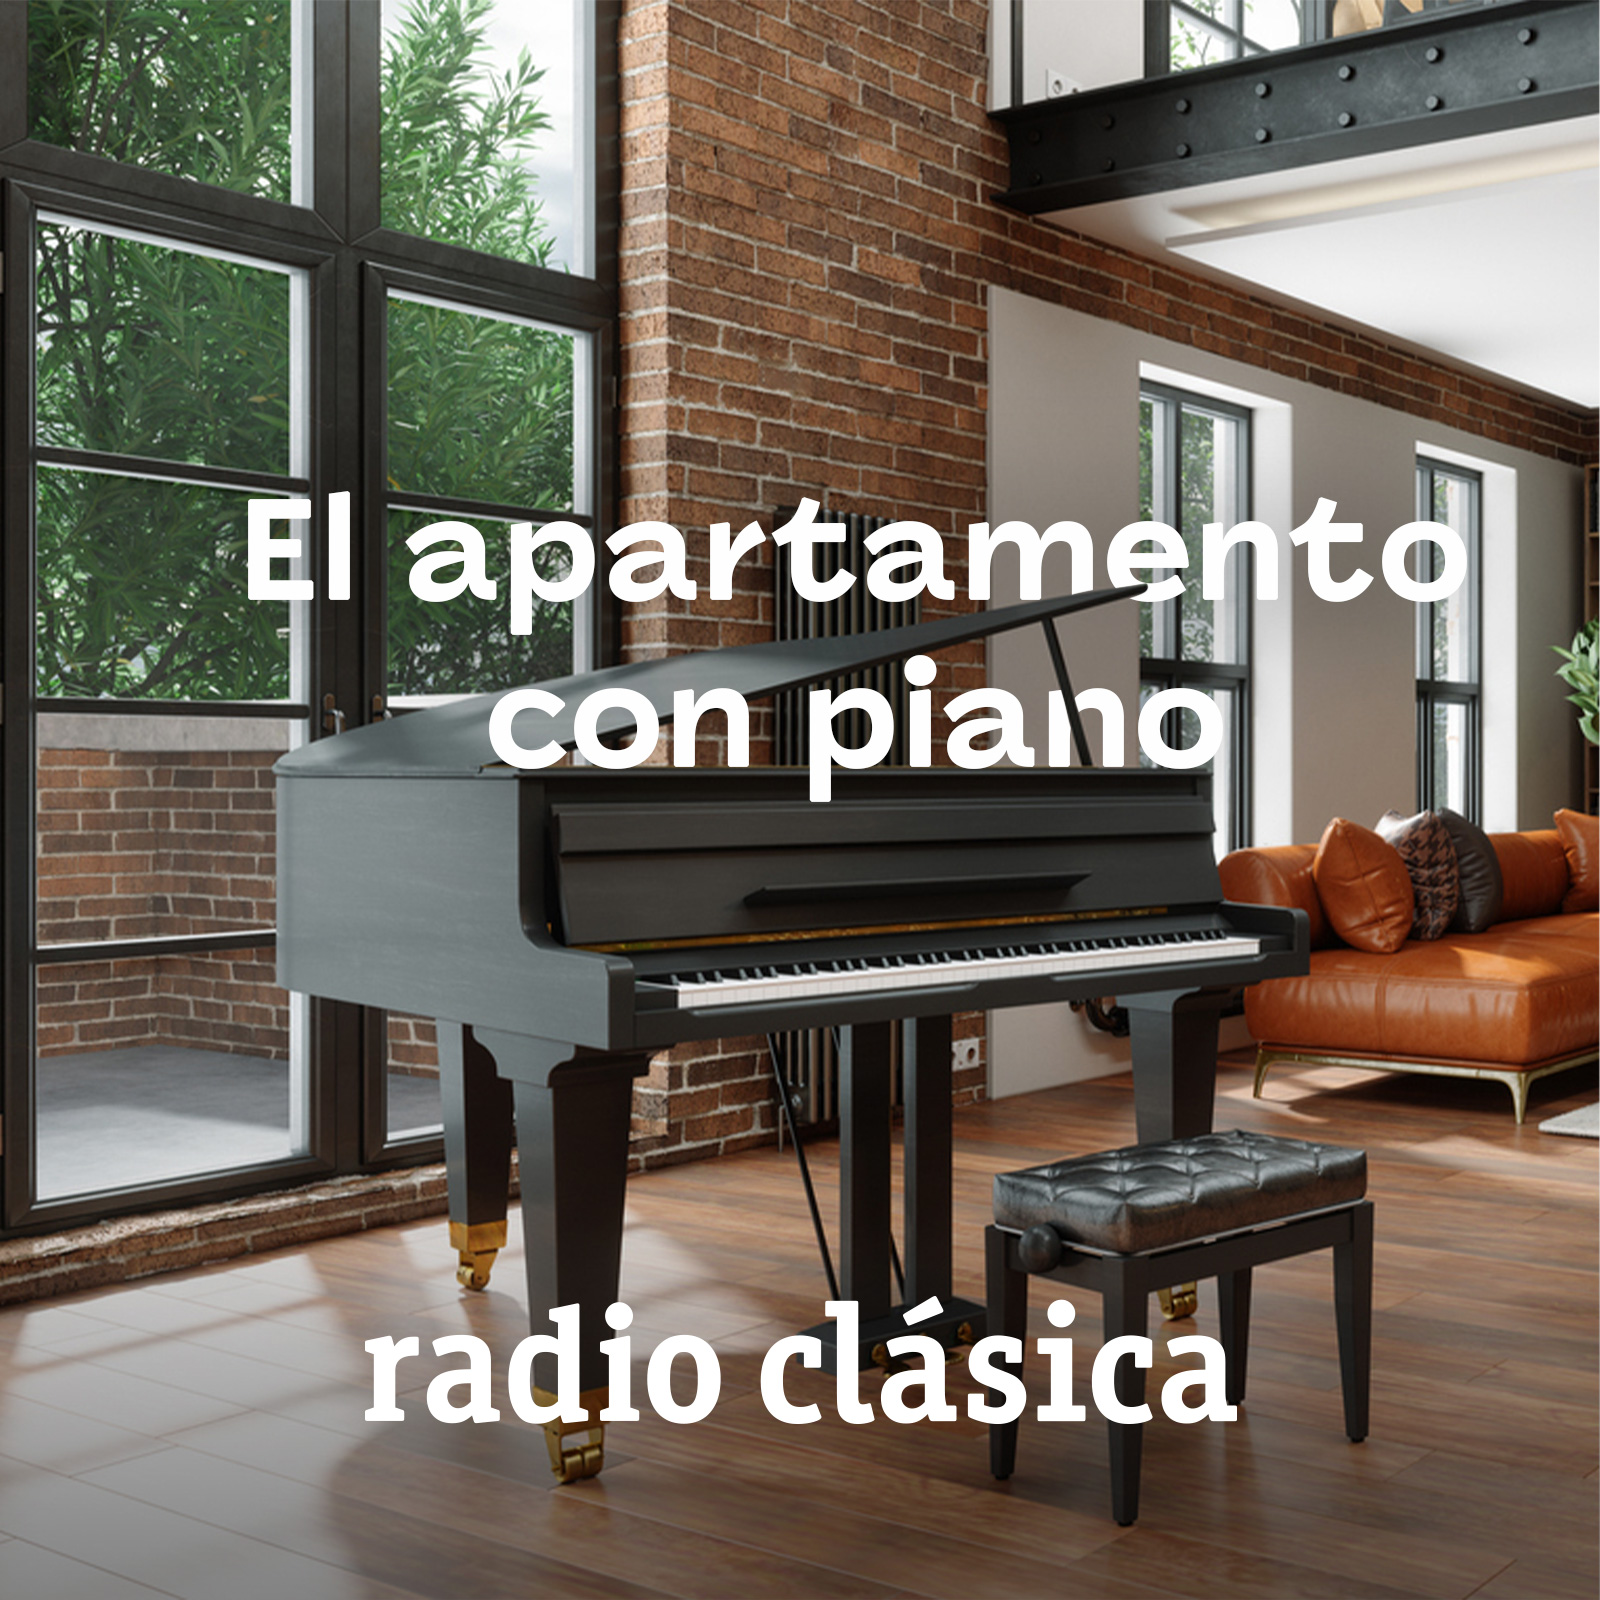 El apartamento con piano